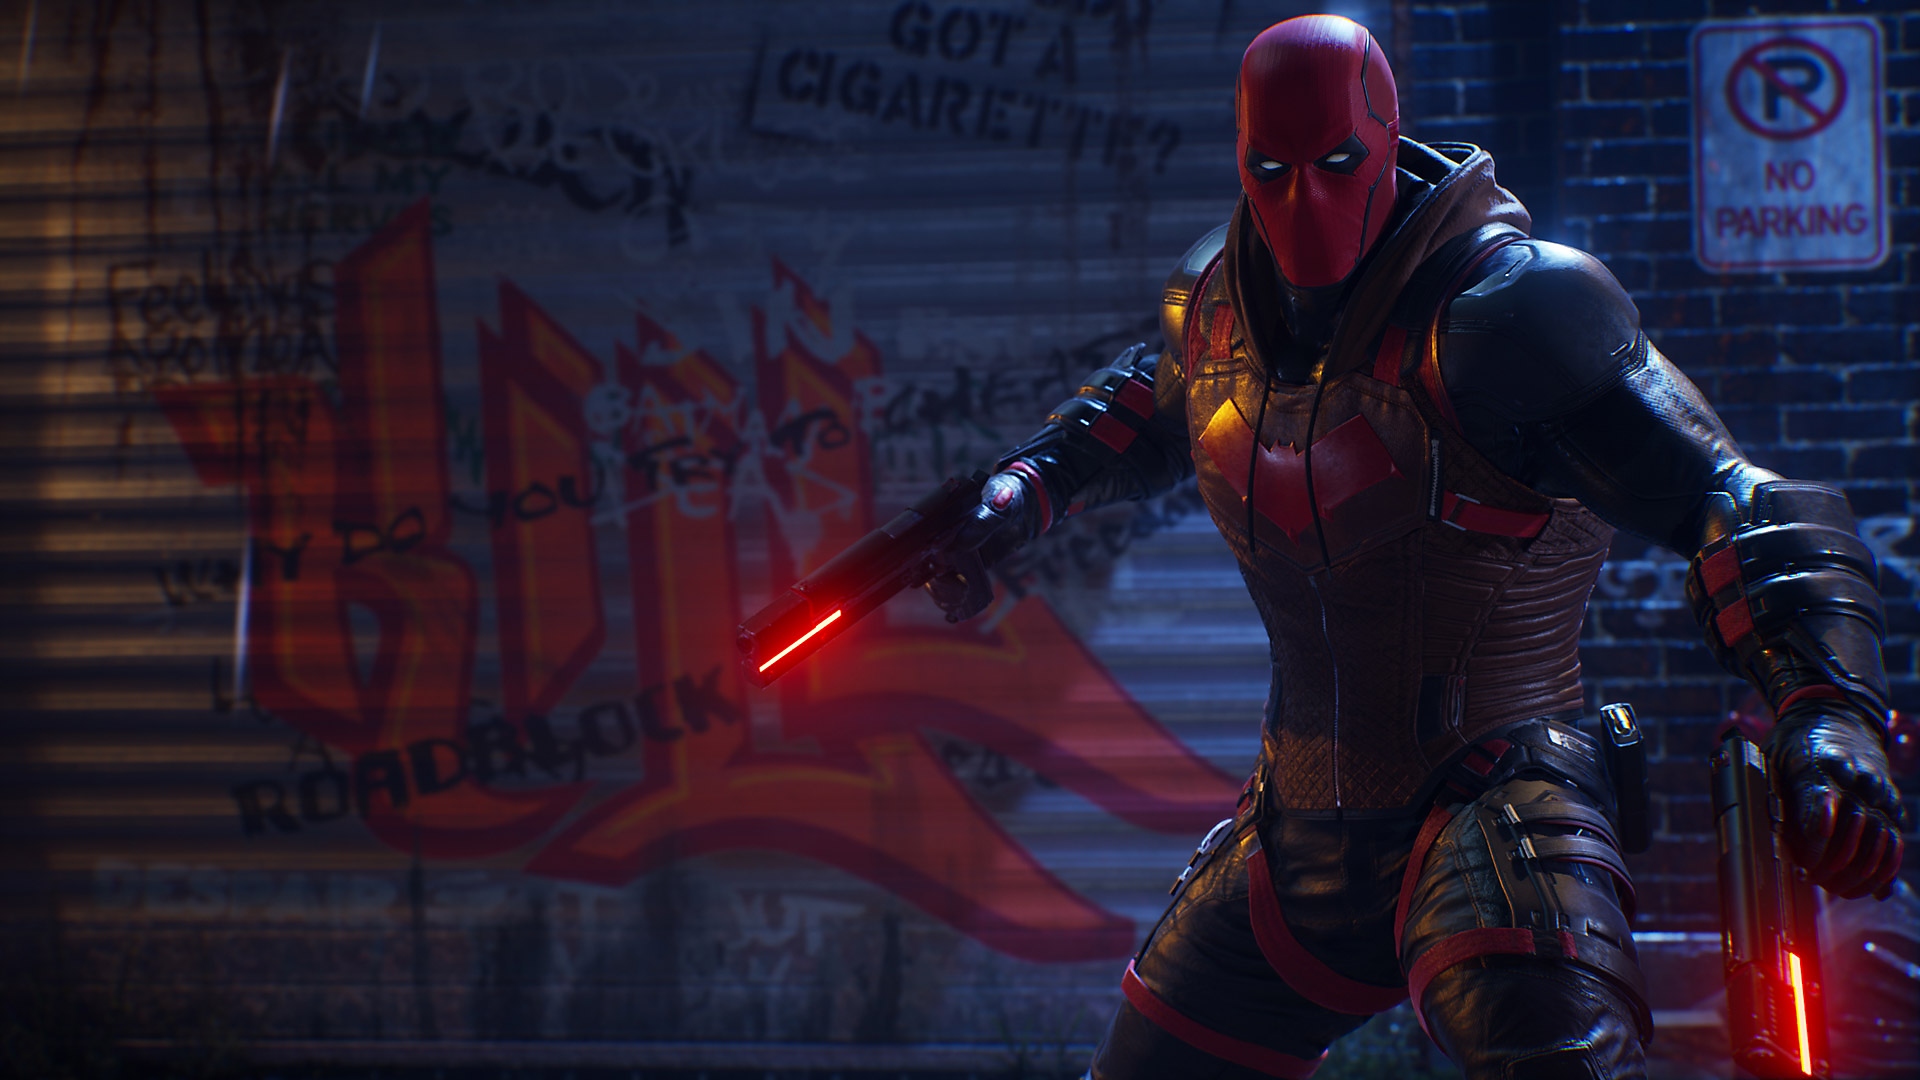 Gotham Knights-screenshot - Red Hood met wapens in de hand